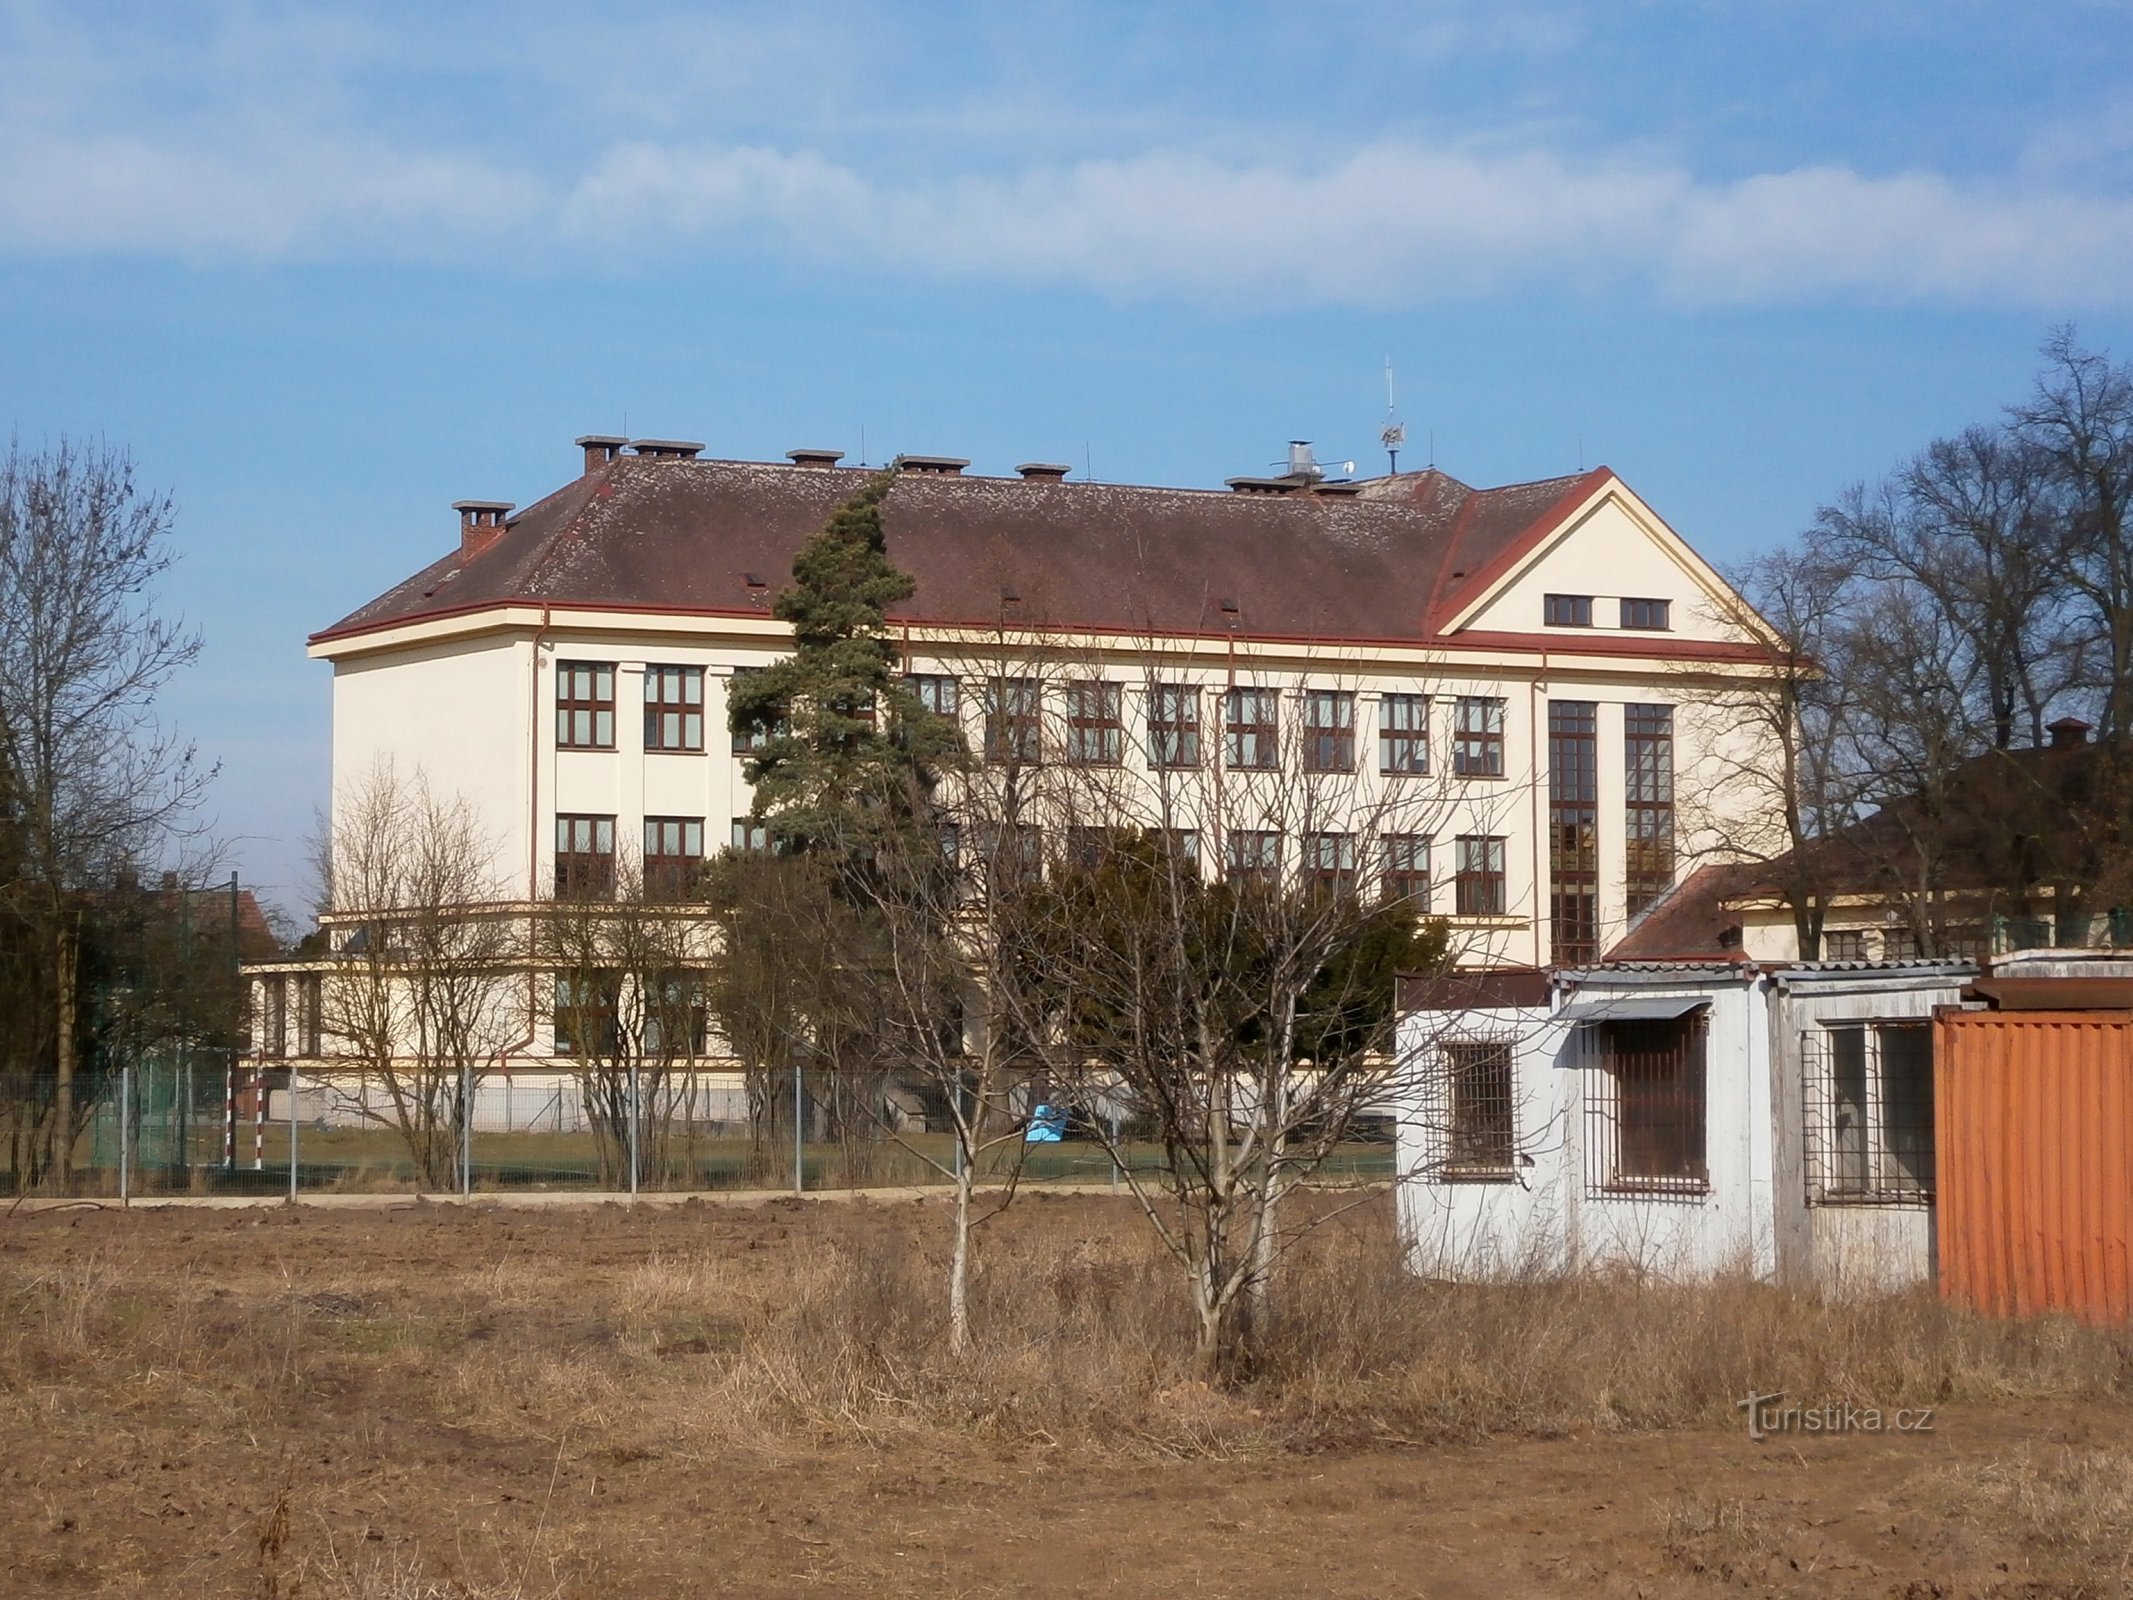 Osnovna škola Masaryk u Plotiště nad Labem (Hradec Králové, 9.3.2015.)